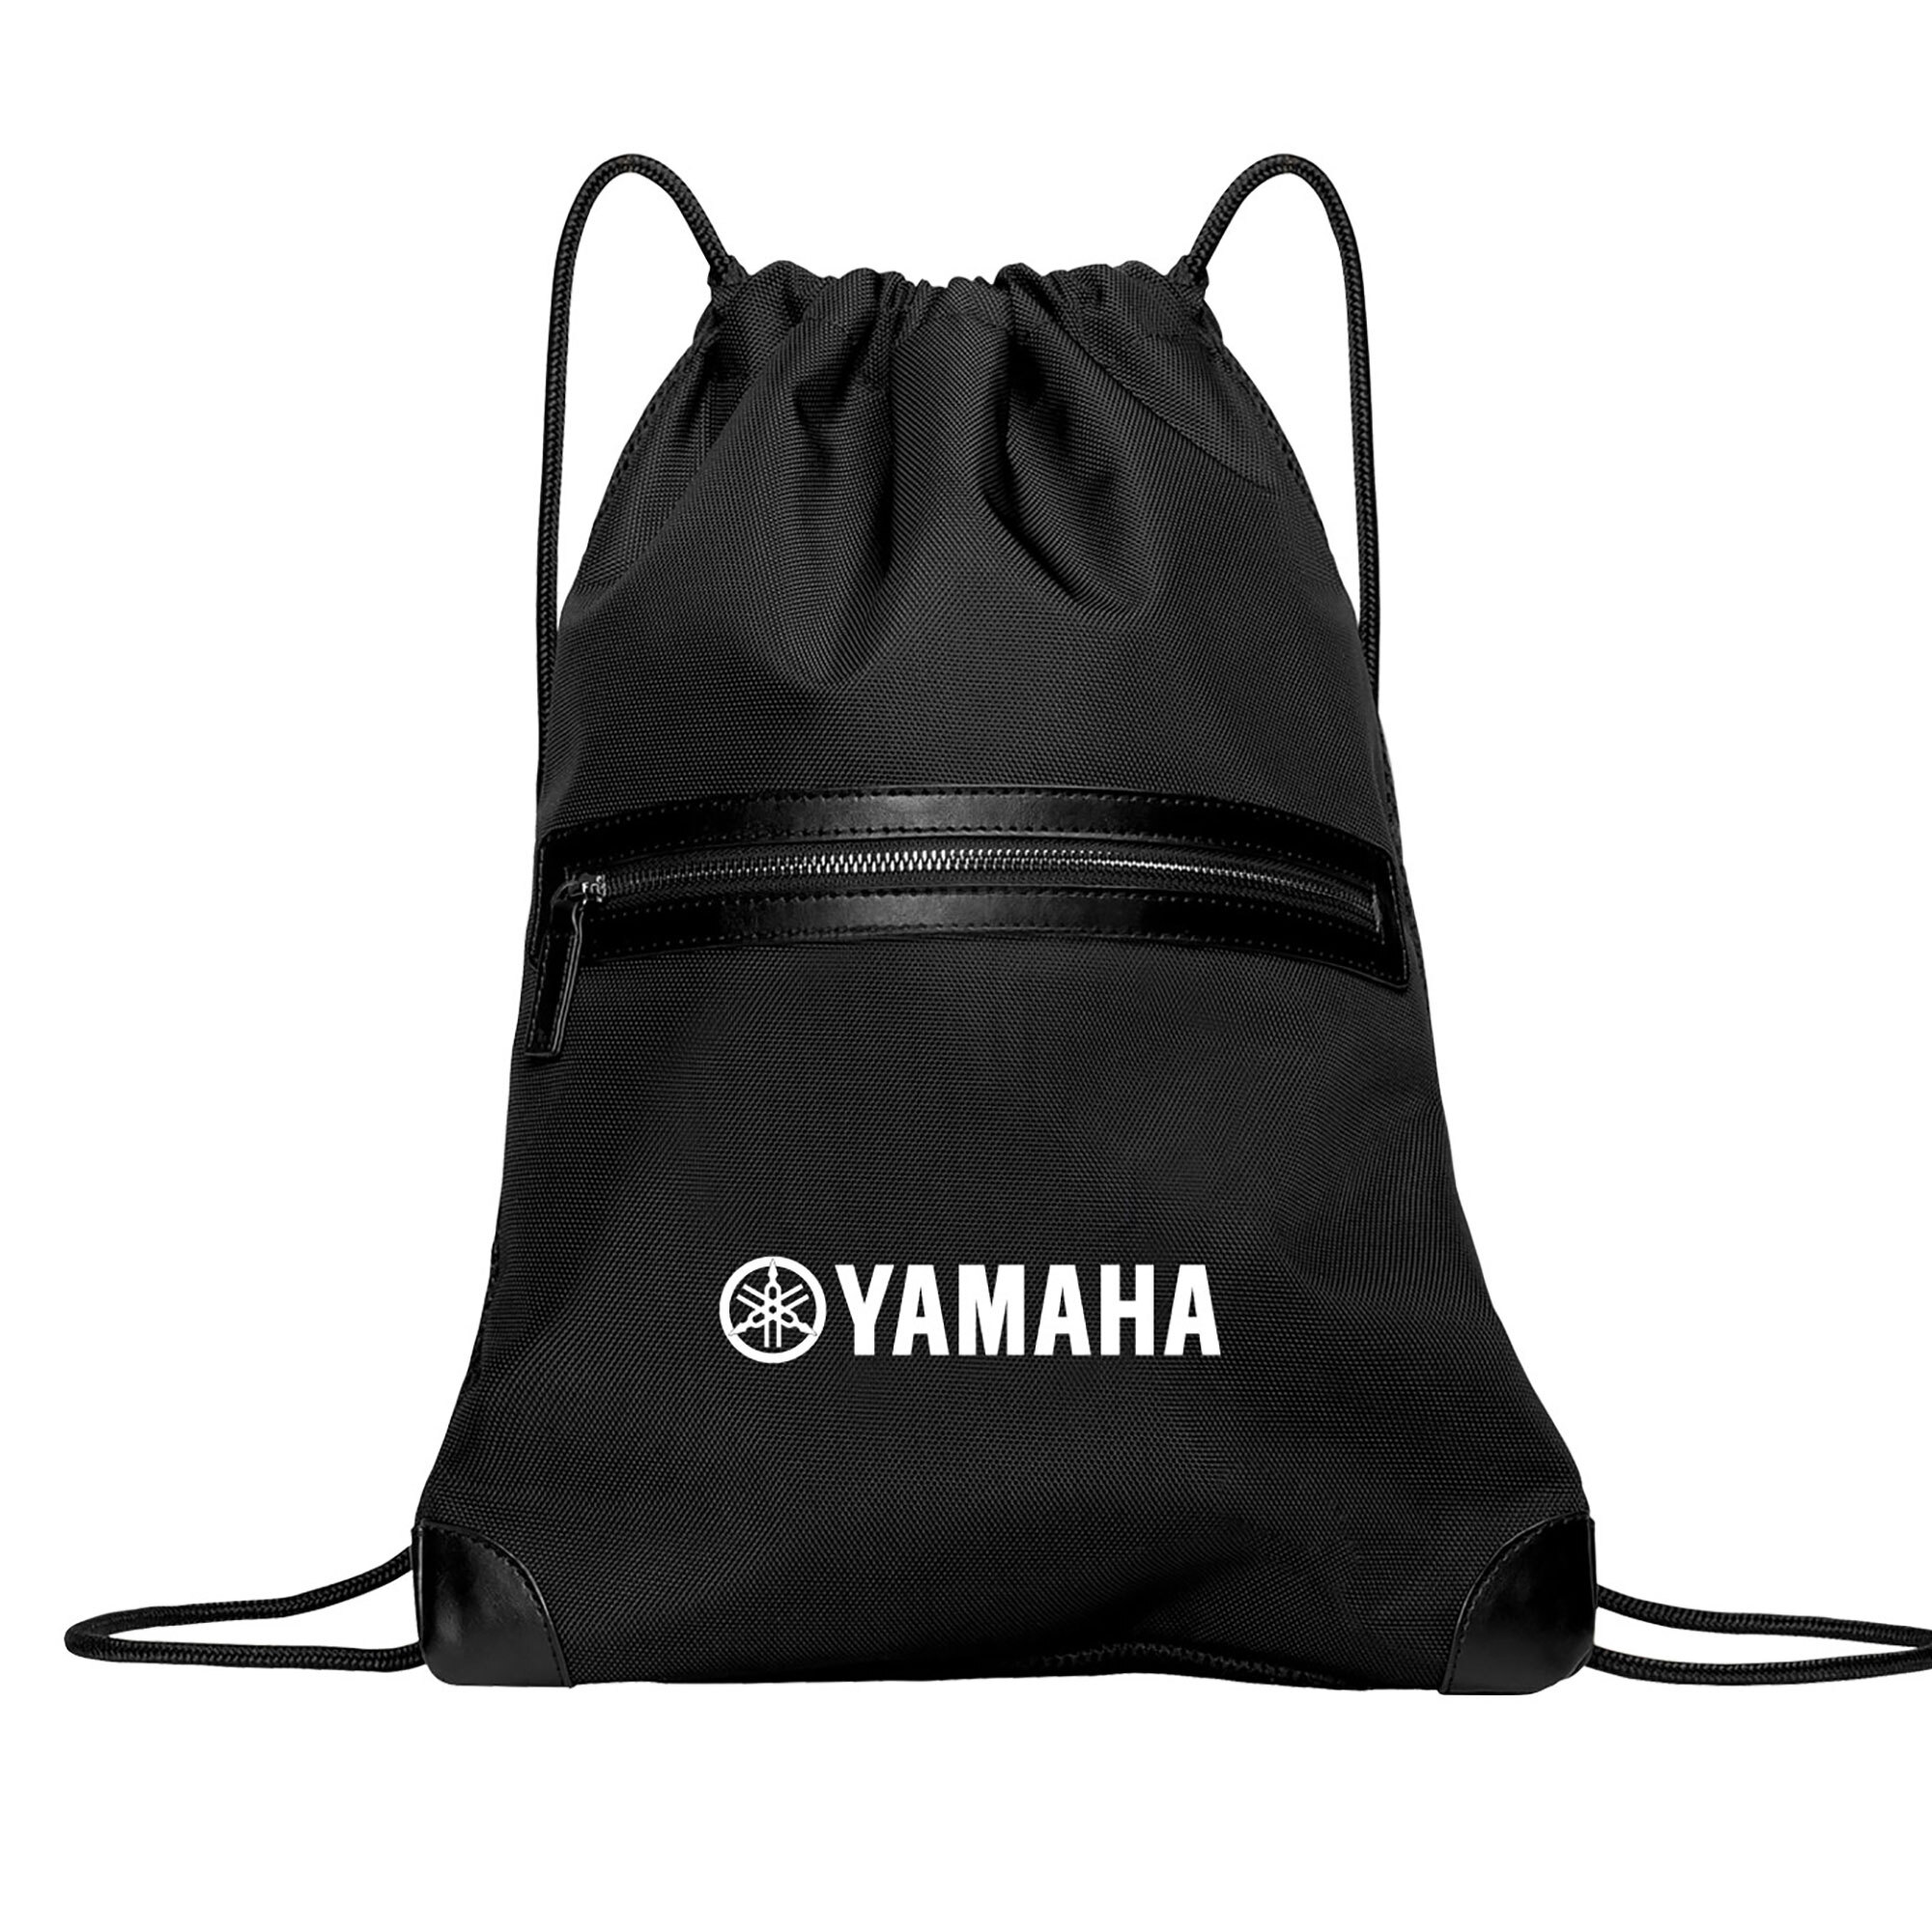 Yamaha Drawstring Backpack